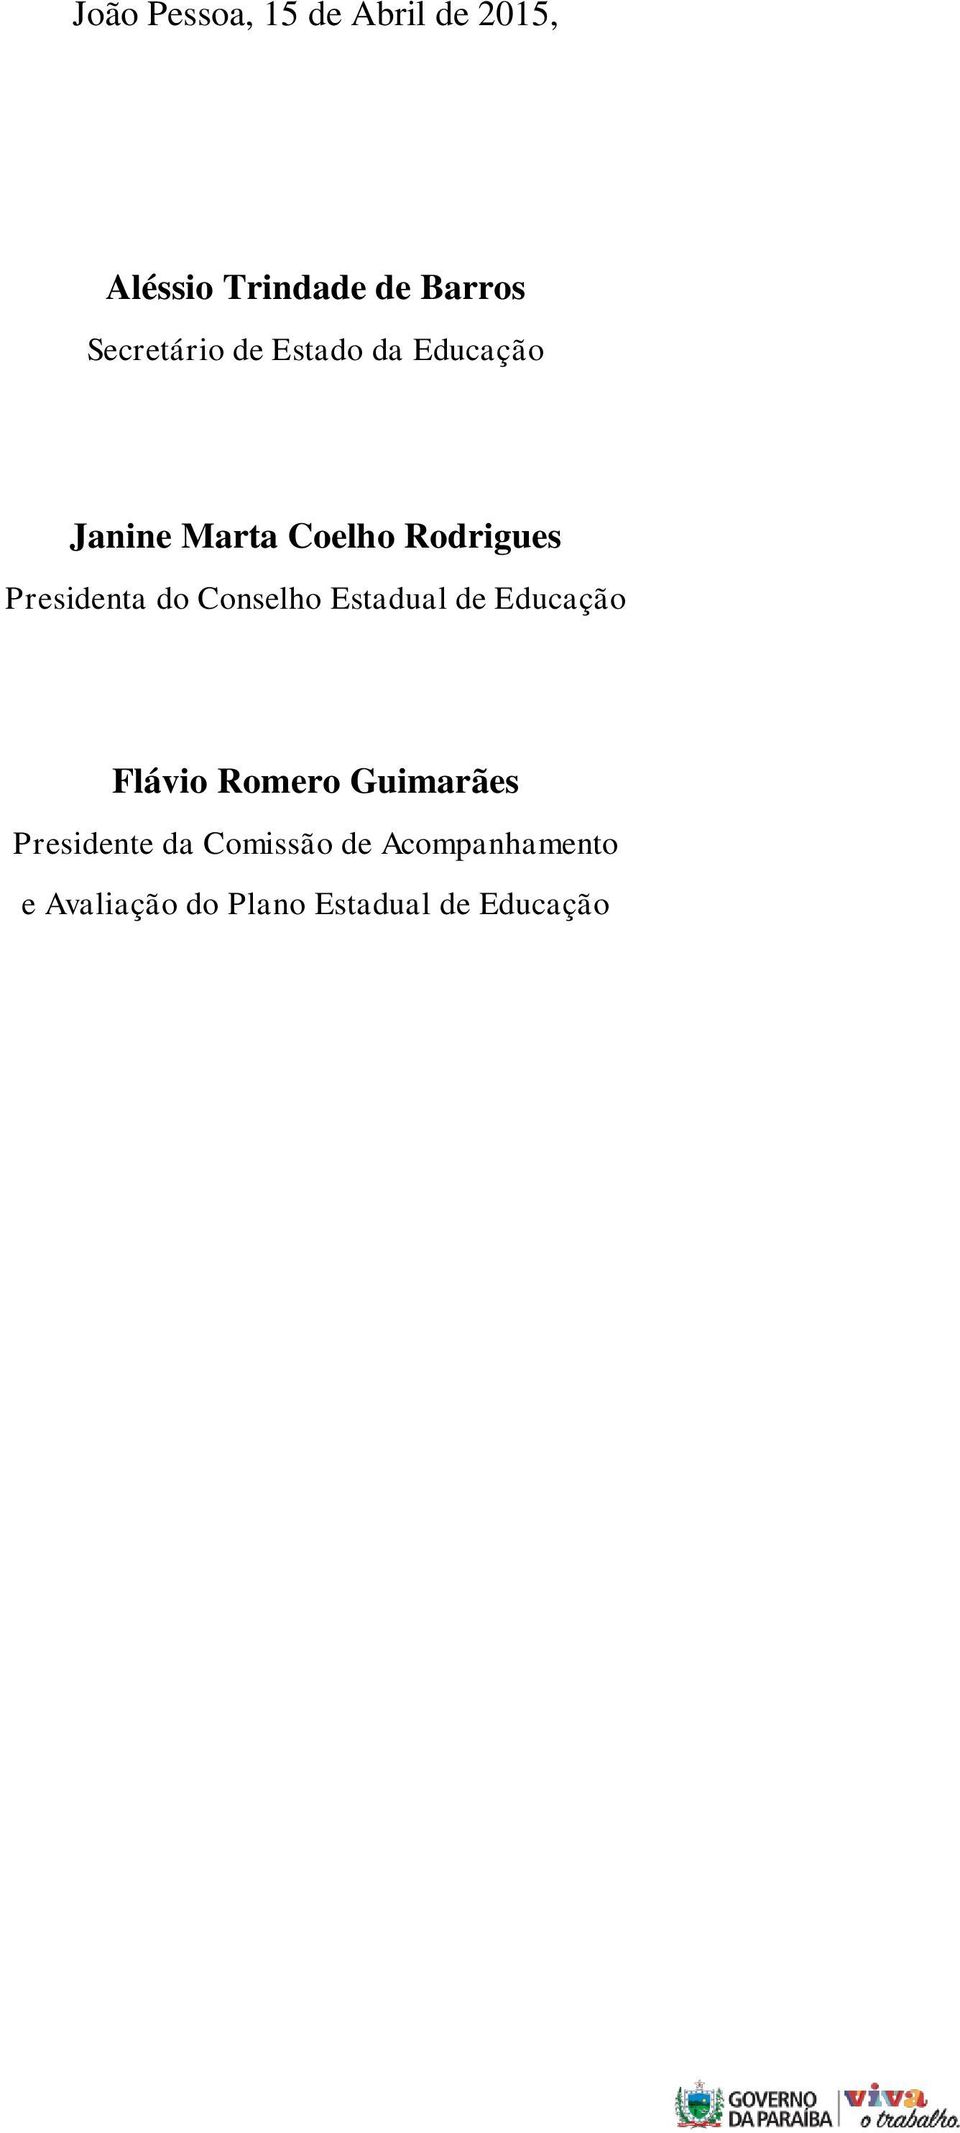 Presidenta do Conselho Estadual de Educação Flávio Romero Guimarães